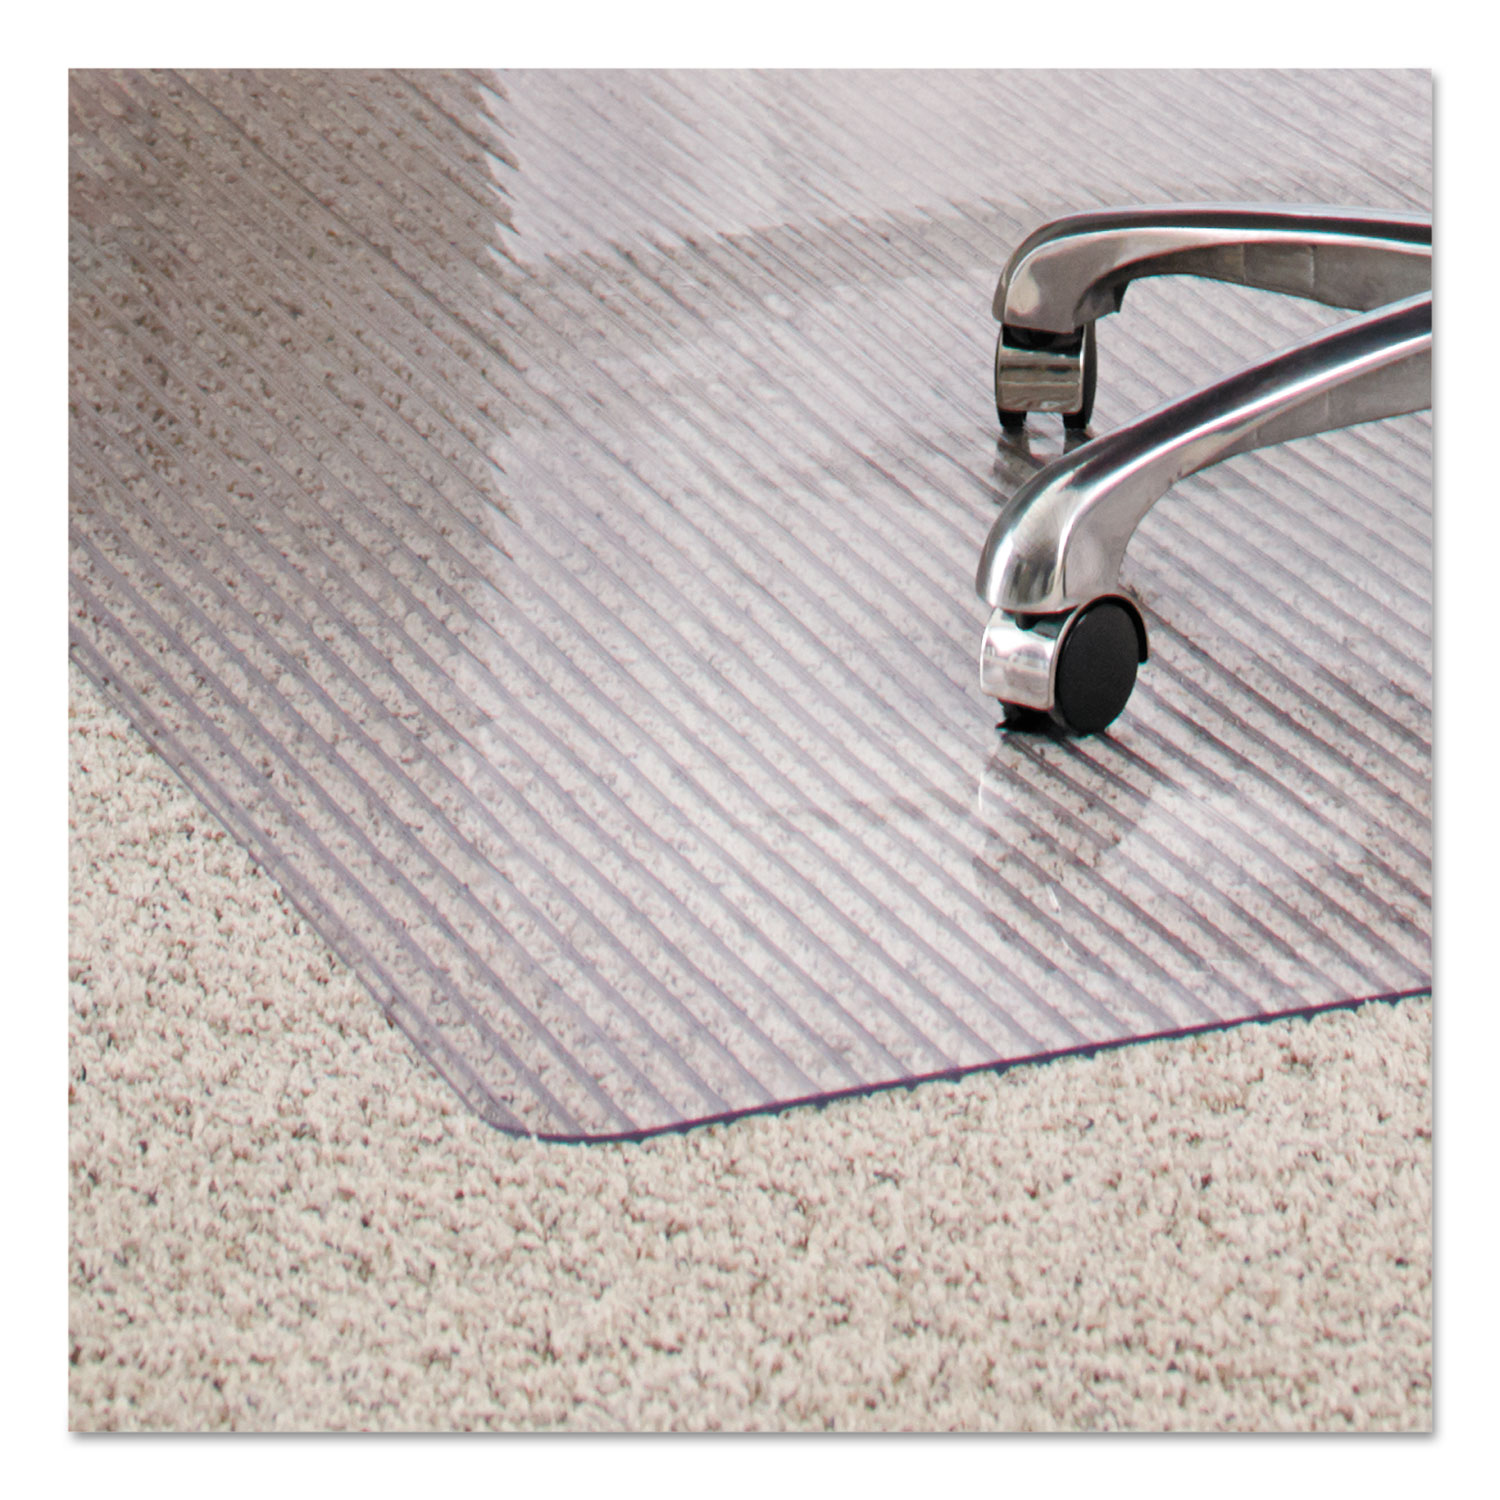  ES Robbins 162008 Dimensions Chair Mat for Carpet, 36 x 48, Clear (ESR162008) 